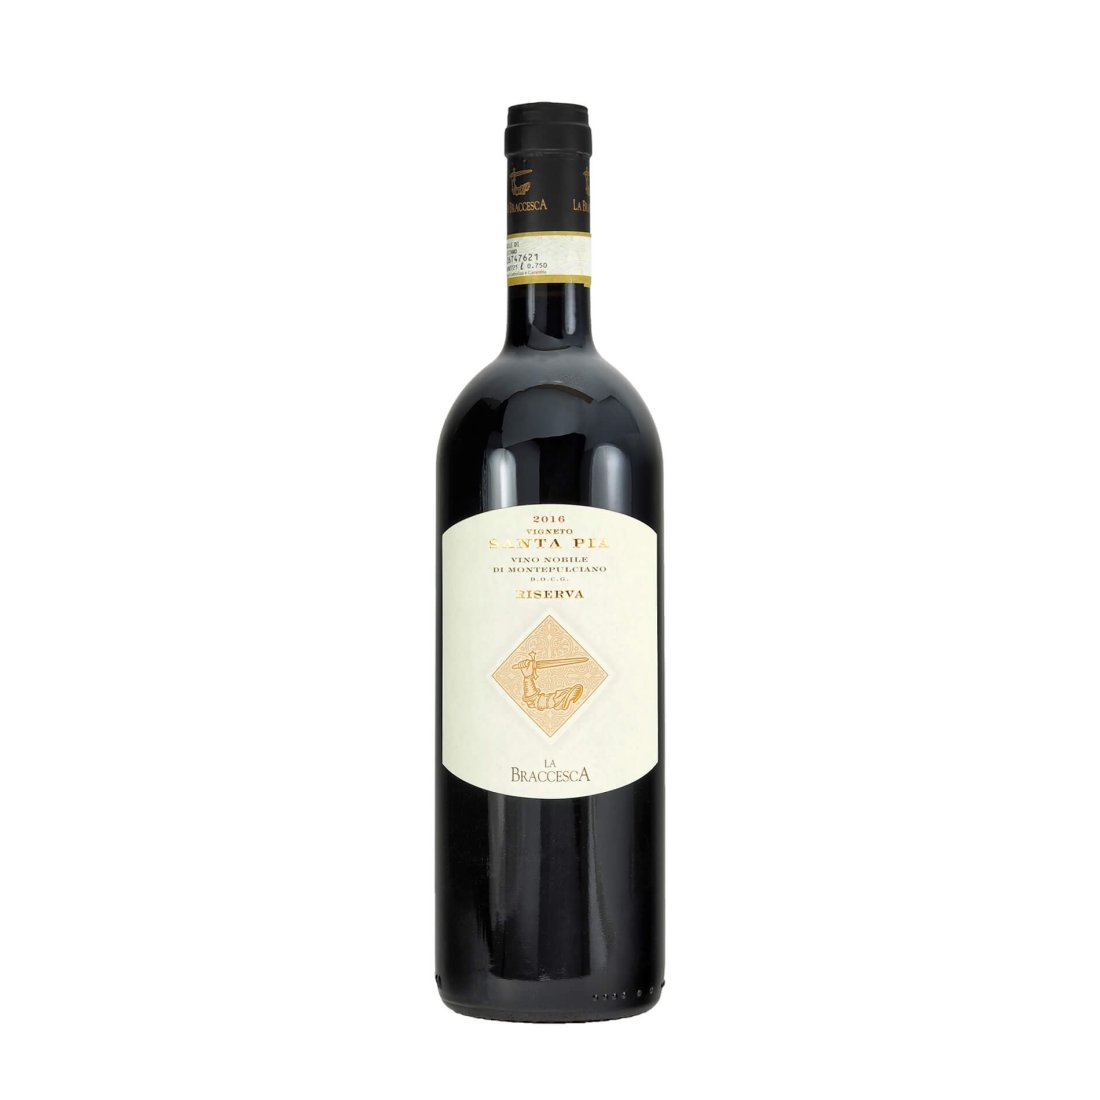 "Santa Pia“ Vino Nobile di Montepulciano DOCG Riserva 2016 LA BRACCESCA Antinori